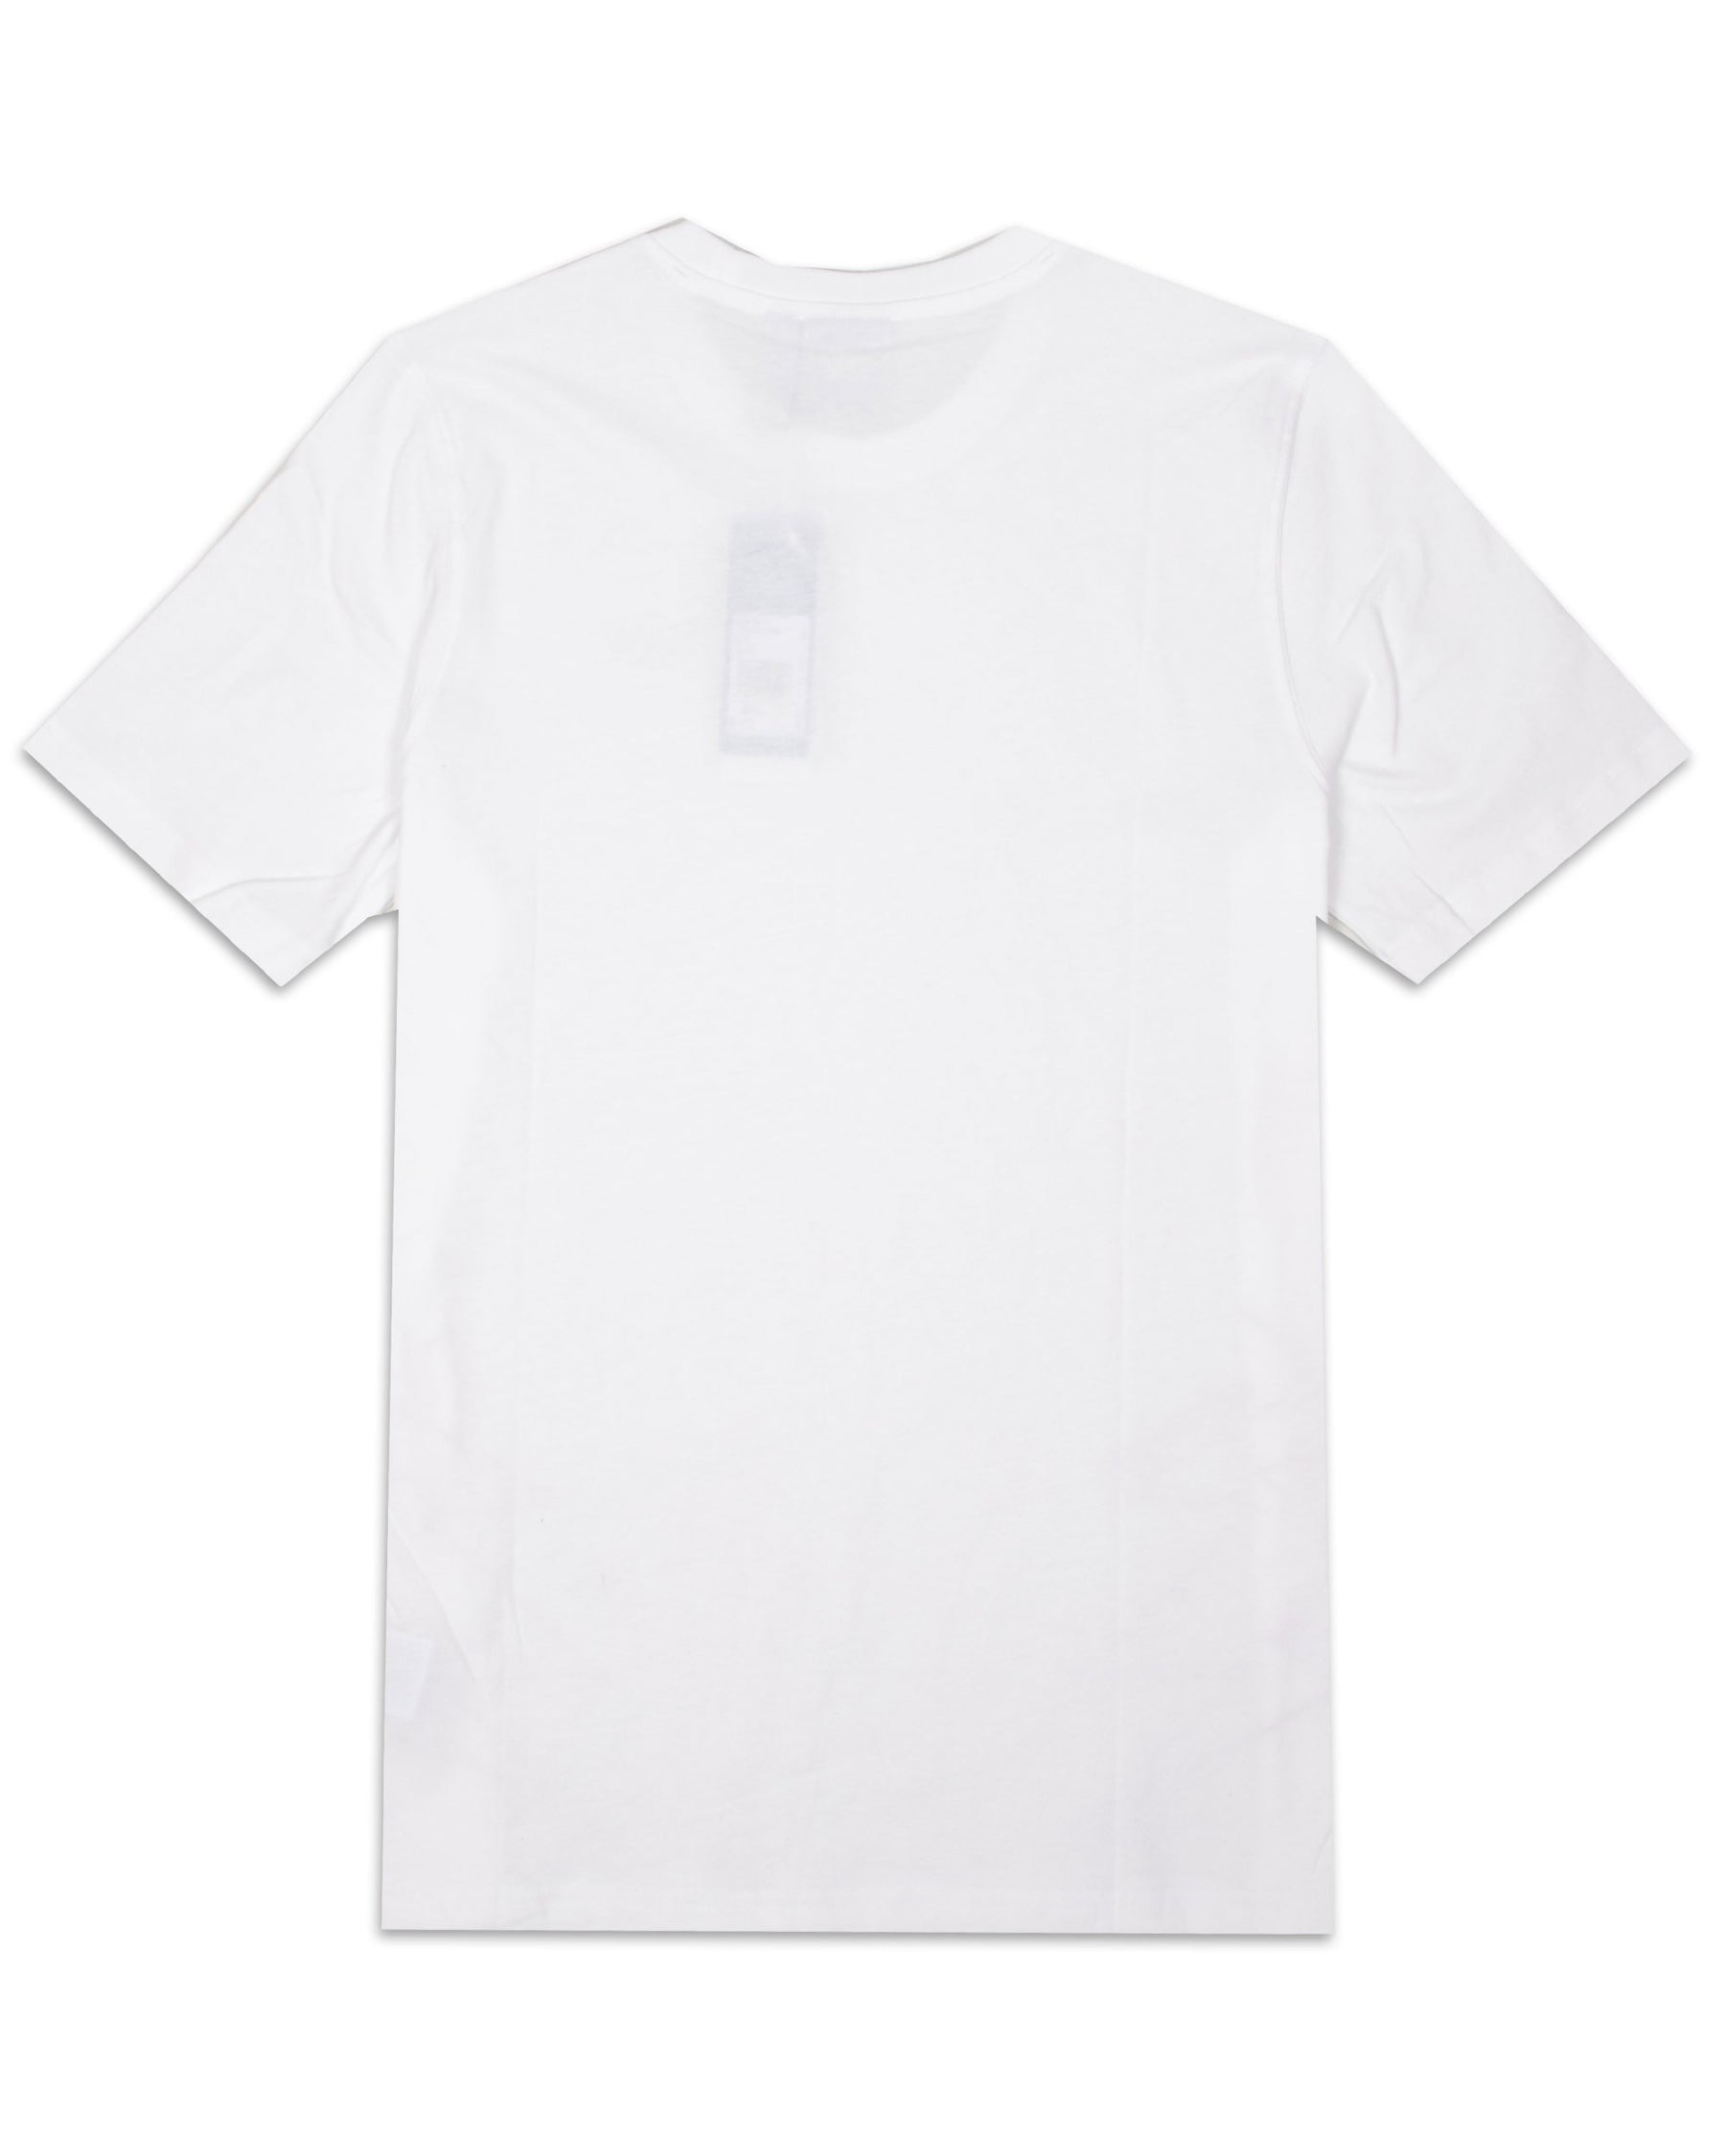 T-Shirt Uomo Adidas Lightning Bianco